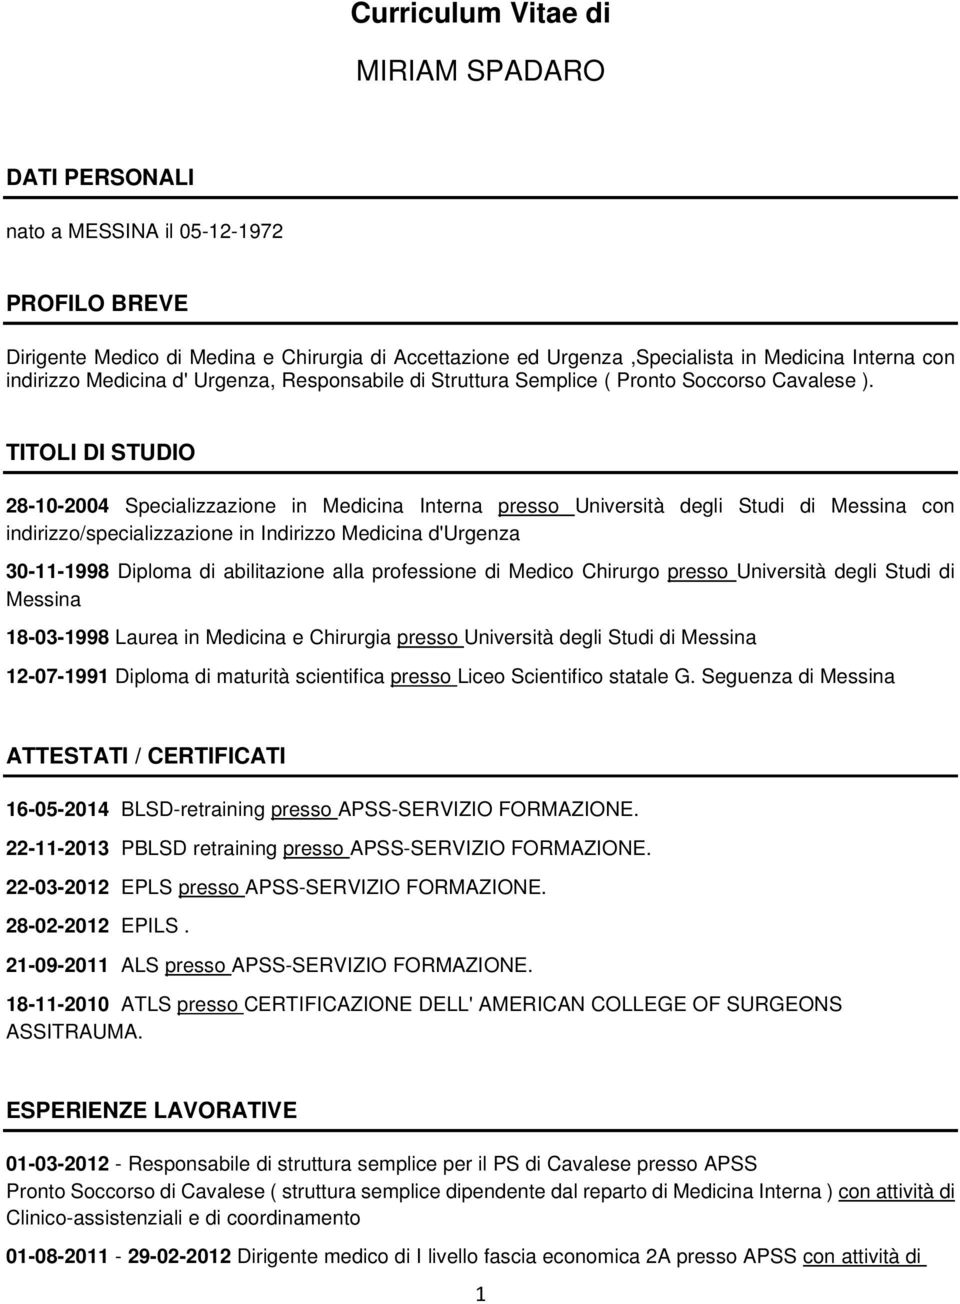 TITOLI DI STUDIO 28-10-2004 Specializzazione in Medicina Interna presso Università degli Studi di Messina con indirizzo/specializzazione in Indirizzo Medicina d'urgenza 30-11-1998 Diploma di